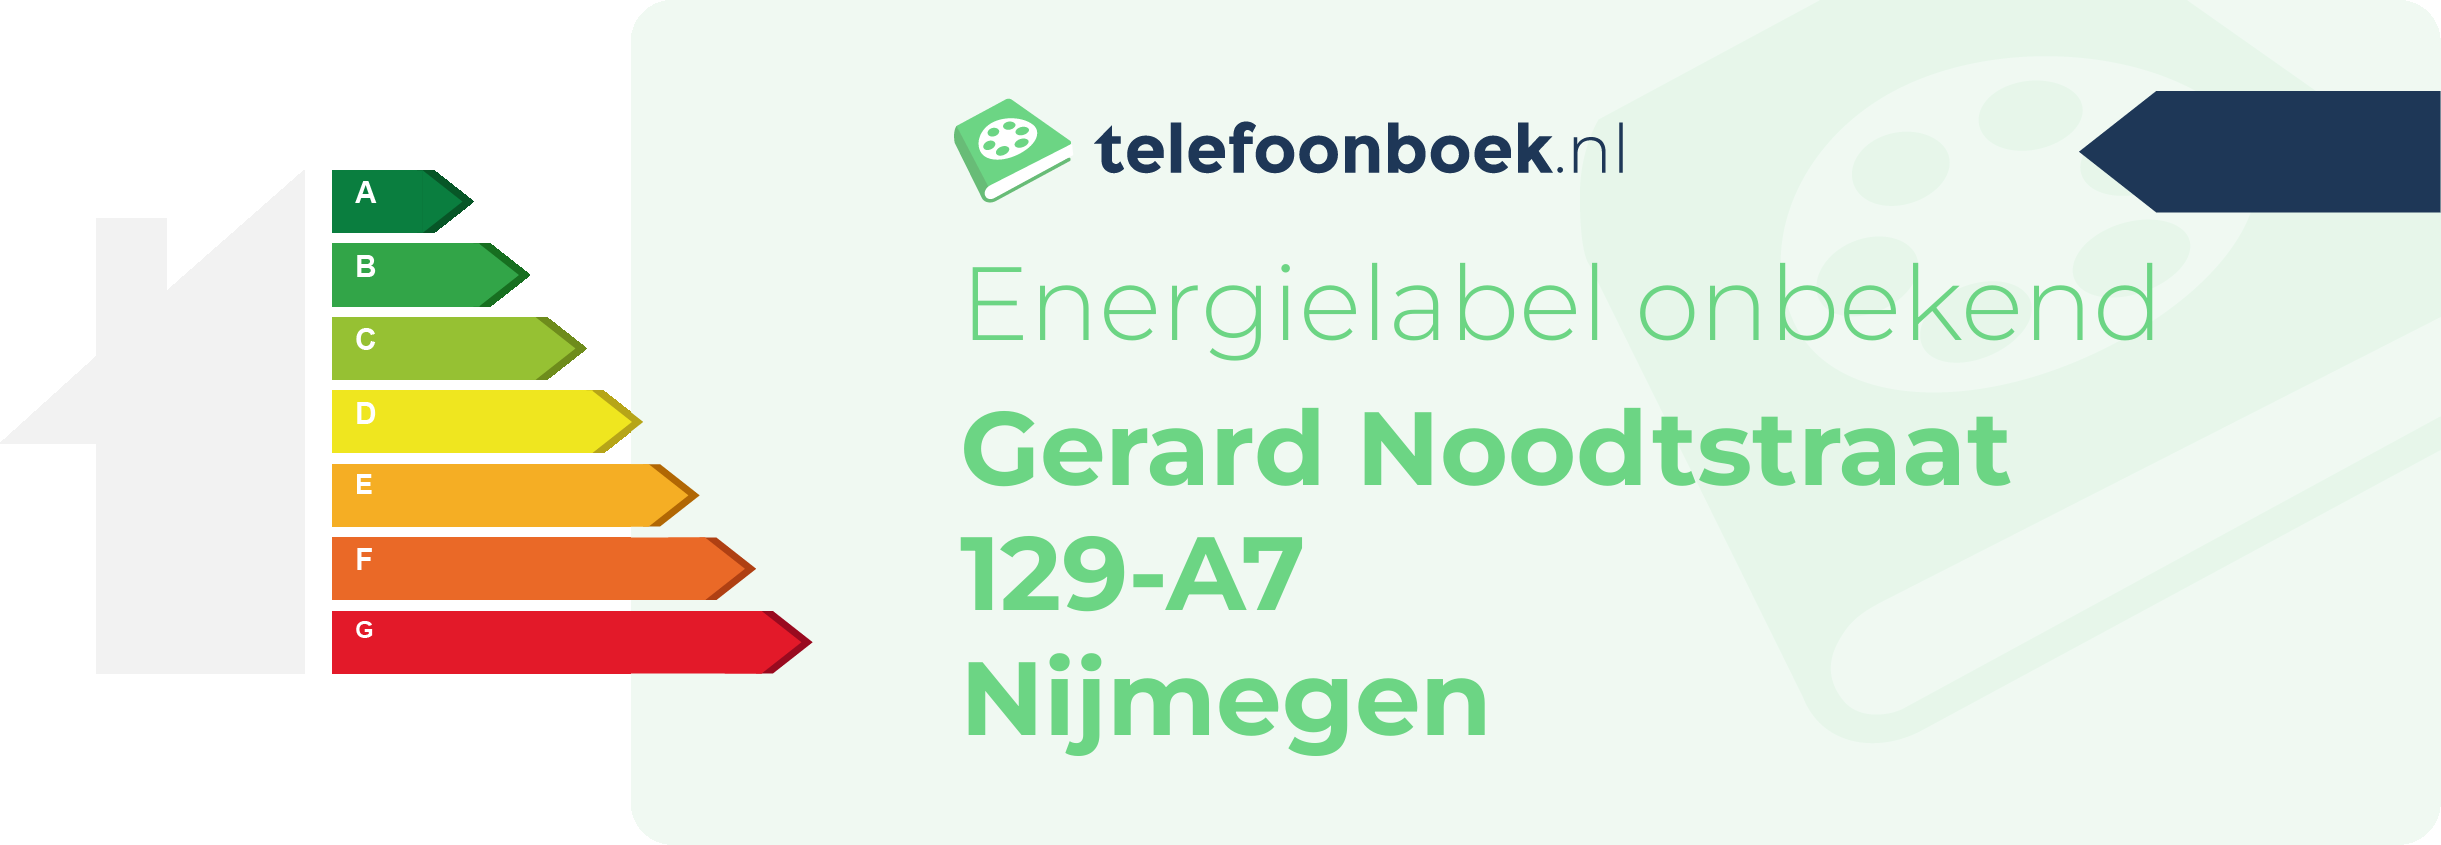 Energielabel Gerard Noodtstraat 129-A7 Nijmegen